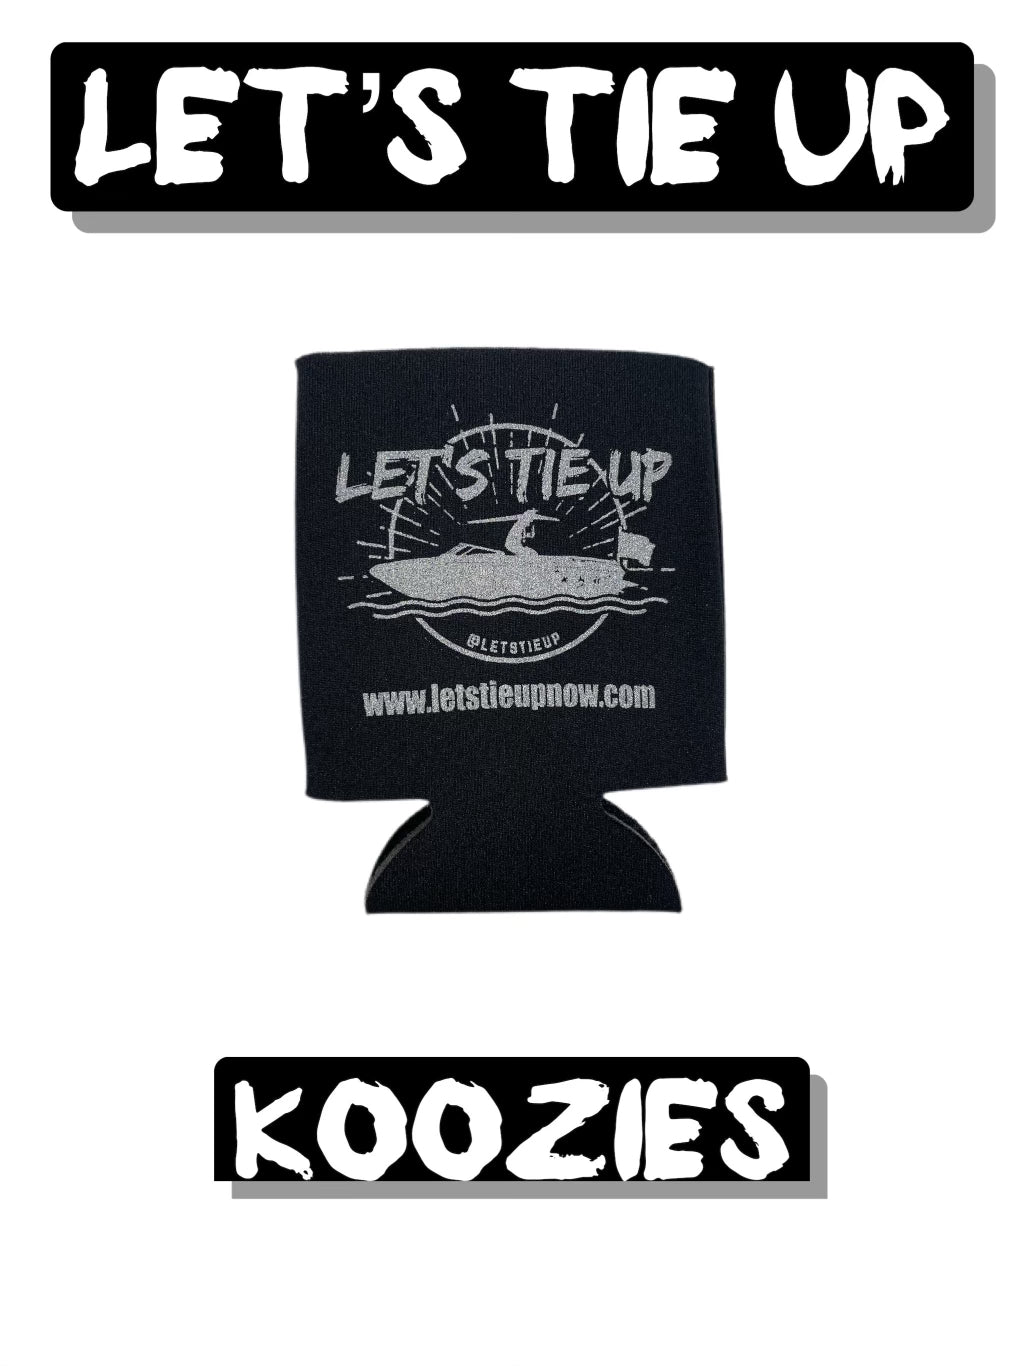 Let's Tie Up 12 oz Can Koozie – Let's Tie Up